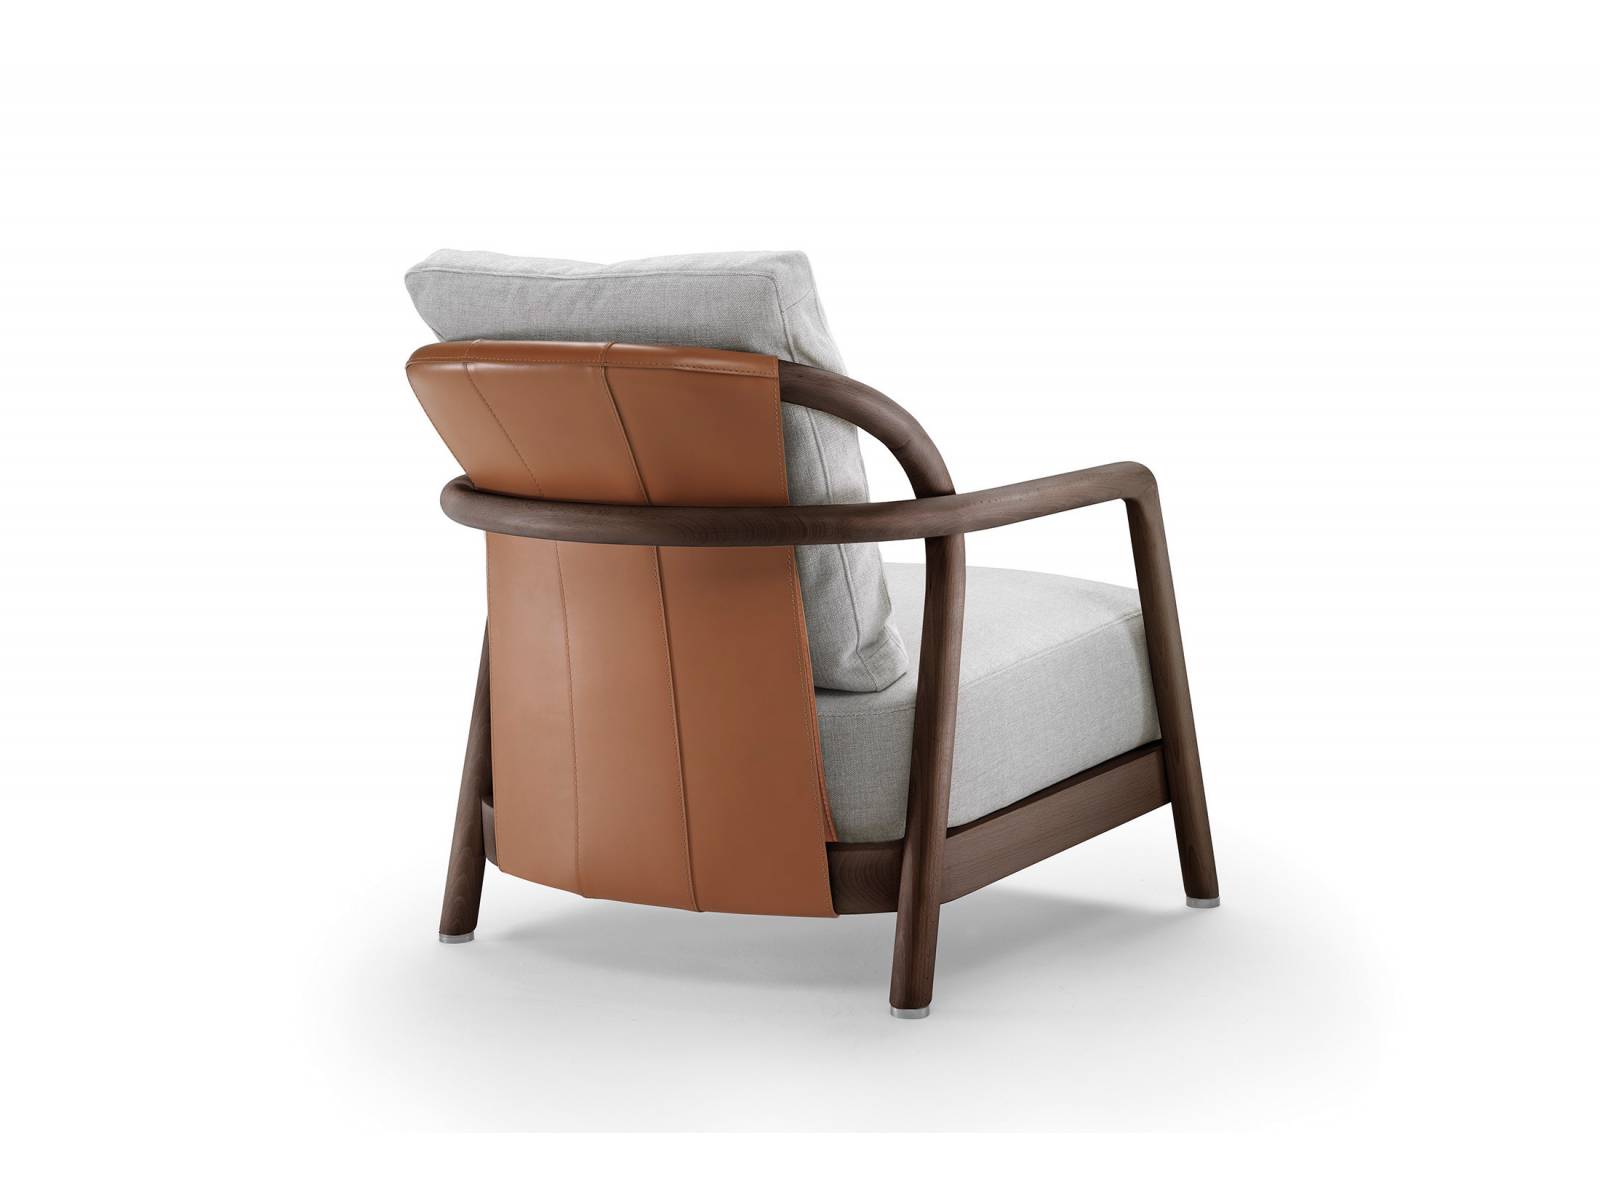 Von vorne wie von hinten schön: Besonderer Blickfang von Sessel «Alison» ist sein Rückenteil aus Leder. Der Entwurf von Designer Carlo Colombo zeigt sich vom klassischen Möbeldesign der Skandinavier inspiriert. Flexform.